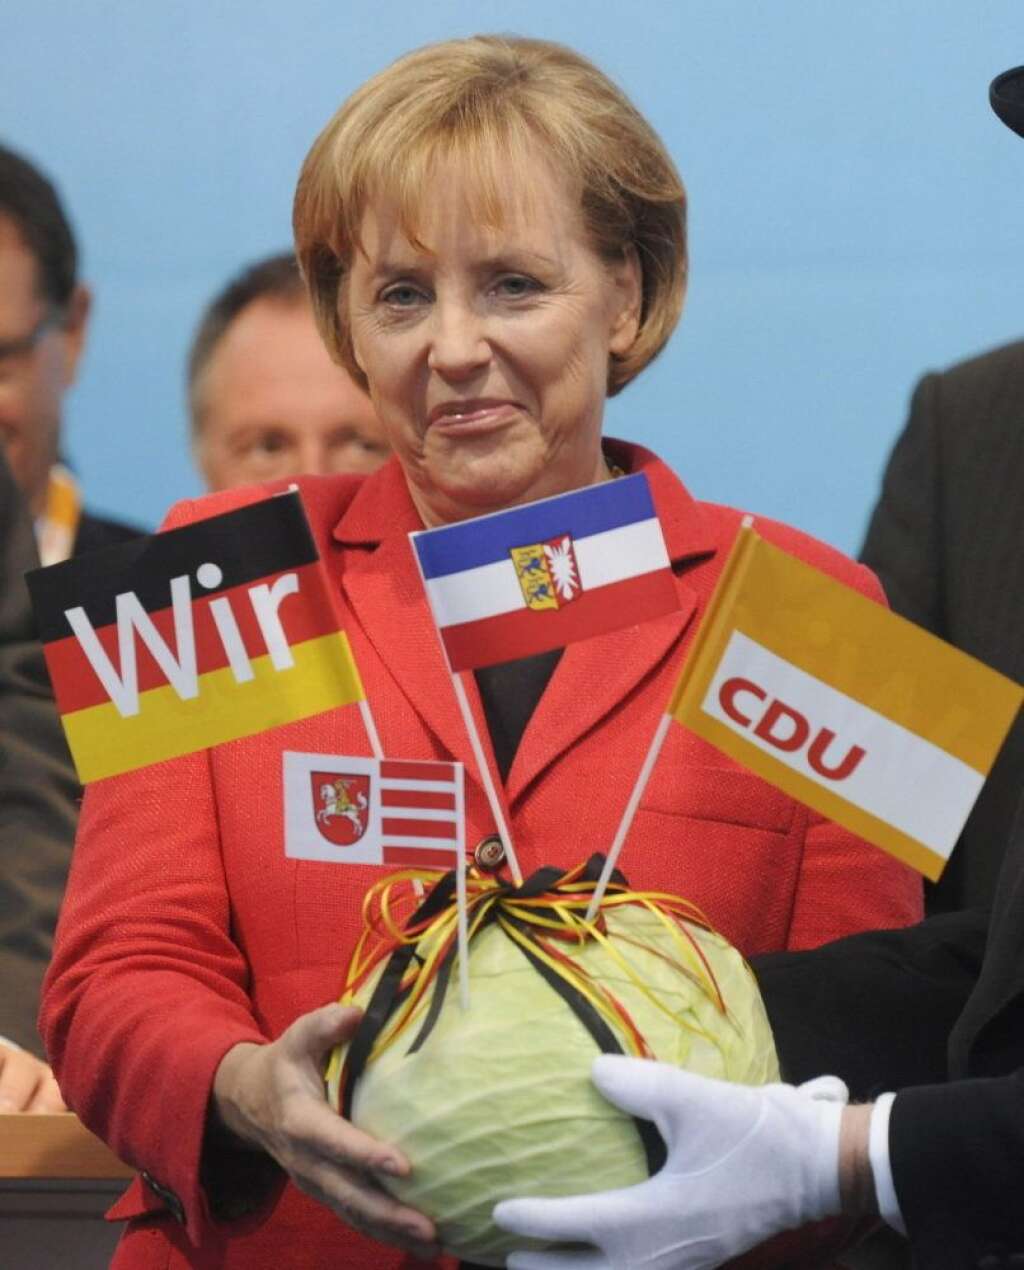 Angela Merkel aime la soupe et le chou - CE QU'ELLE AIME: Angela Merkel affirme avoir des goûts simples et privilégie la tradition culinaire allemande. Le ragoût et les paupiettes figurent parmi ses plats préférés, tout comme la soupe de pommes de terre et le chou farci. Mais la chancelière allemande adore également le fromage, ce qui lui fait au moins un point commun avec François Hollande.